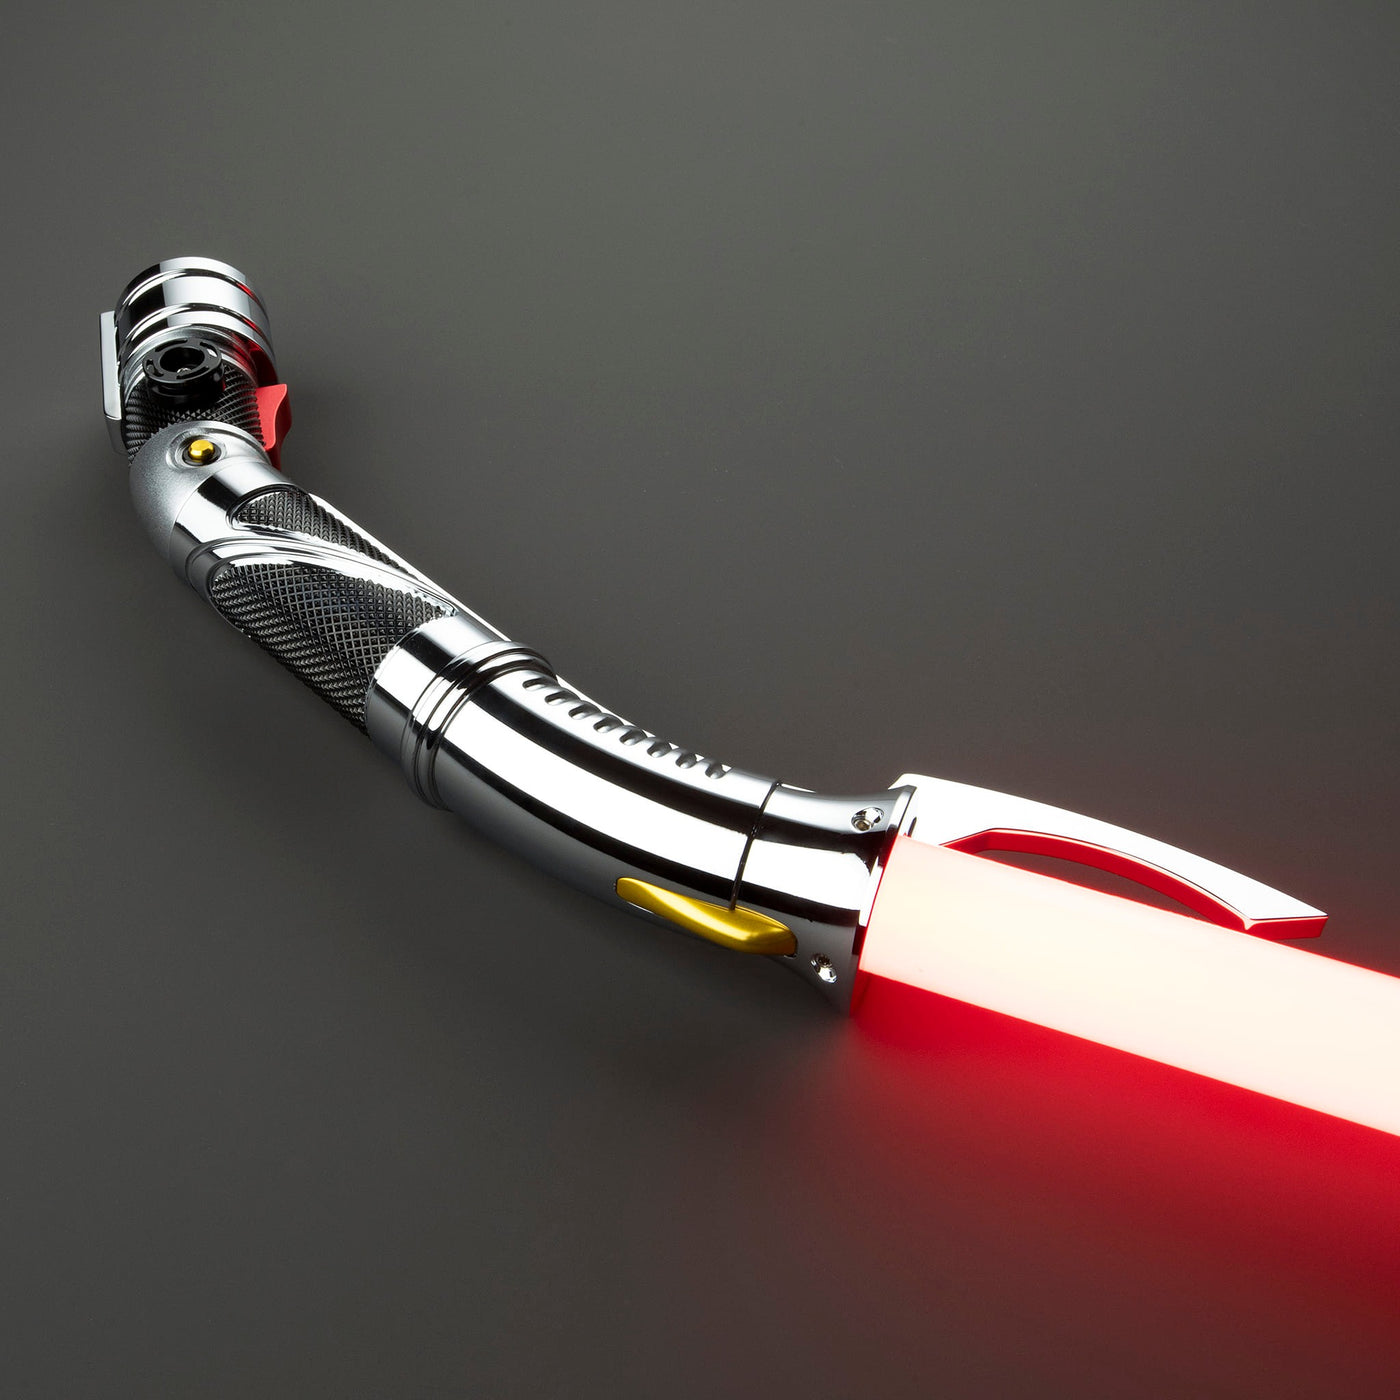 Counts Curve (Pre-Order) - KenJo Sabers - Star Wars Lightsaber replica Jedi Sith - Best sabershop Europe - Nederland light sabers kopen -